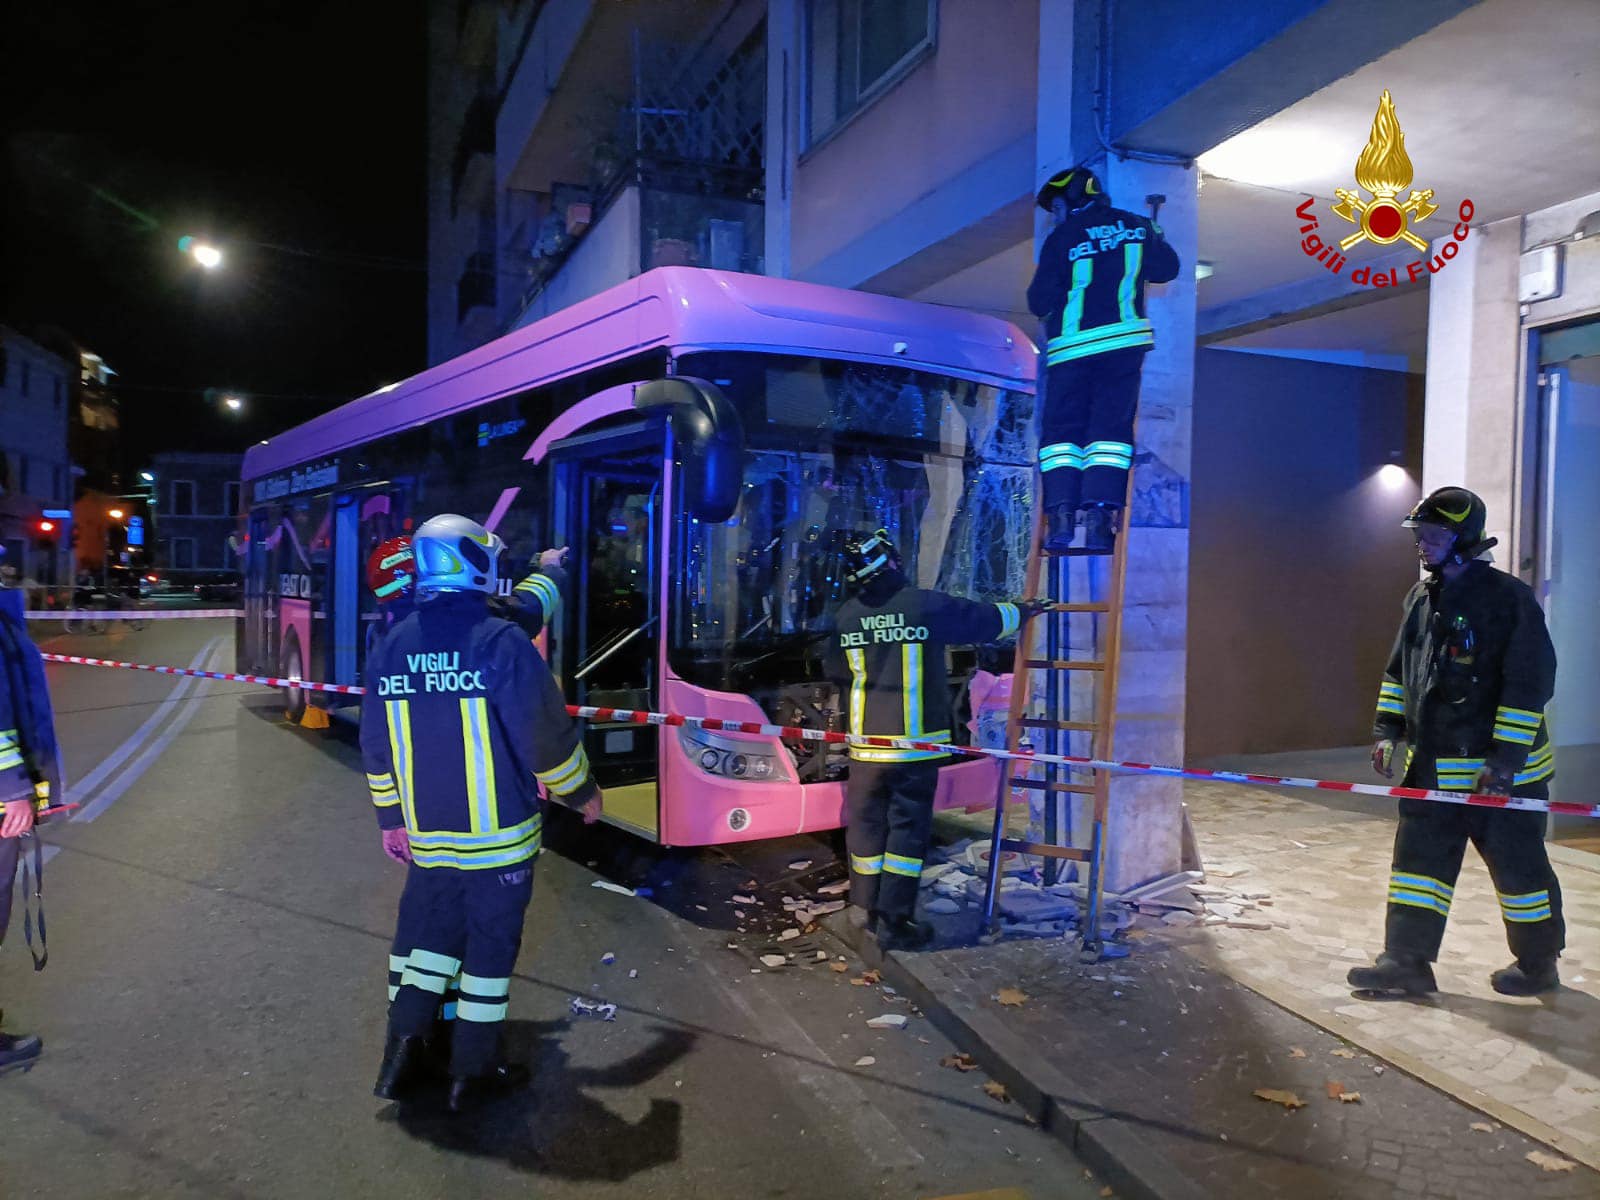  Nova nesreća autobusa u Veneciji 